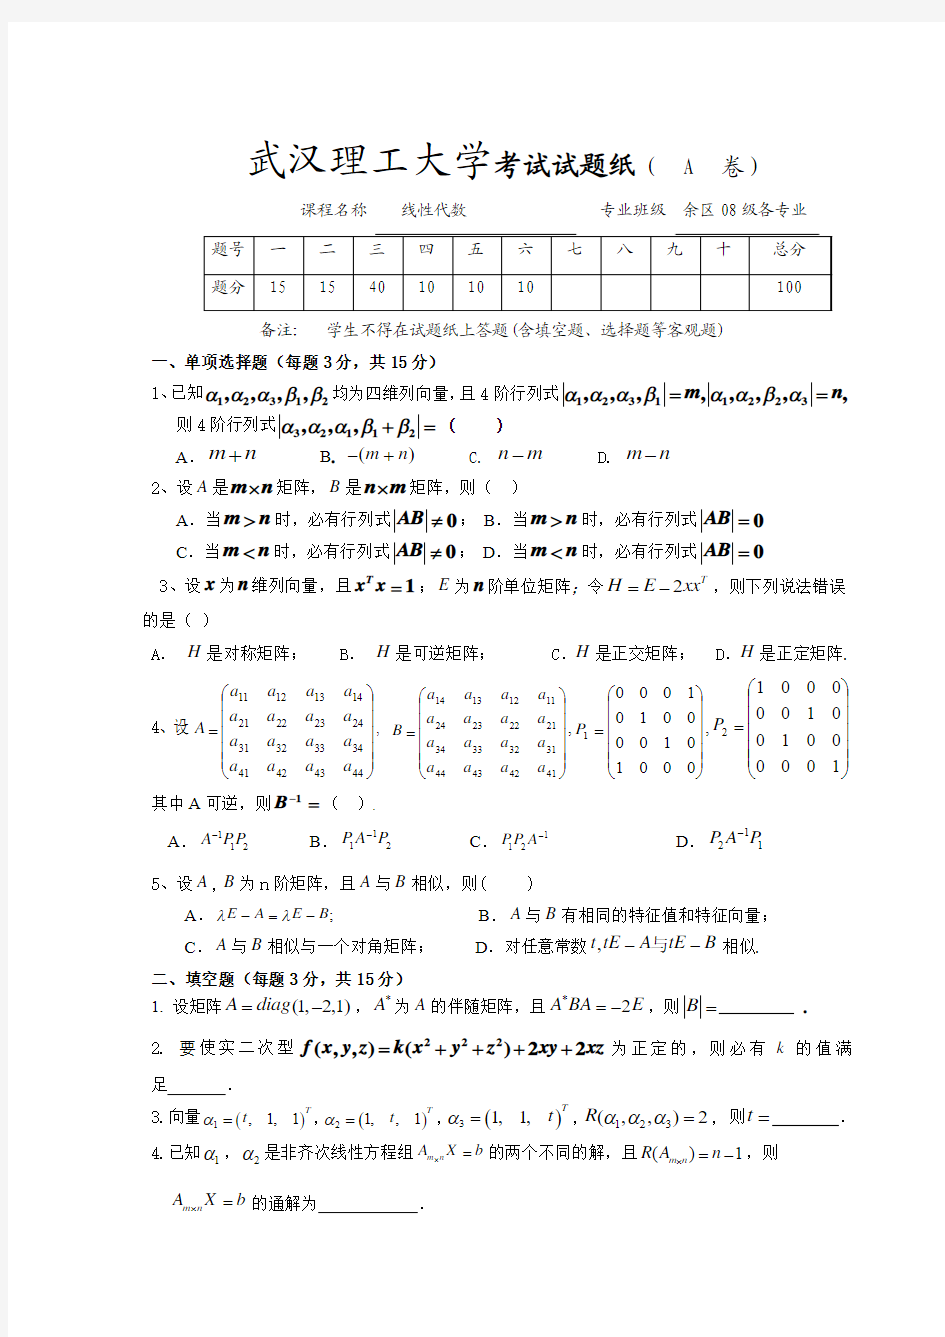 武汉理工大学08级线性代数期终考试试卷